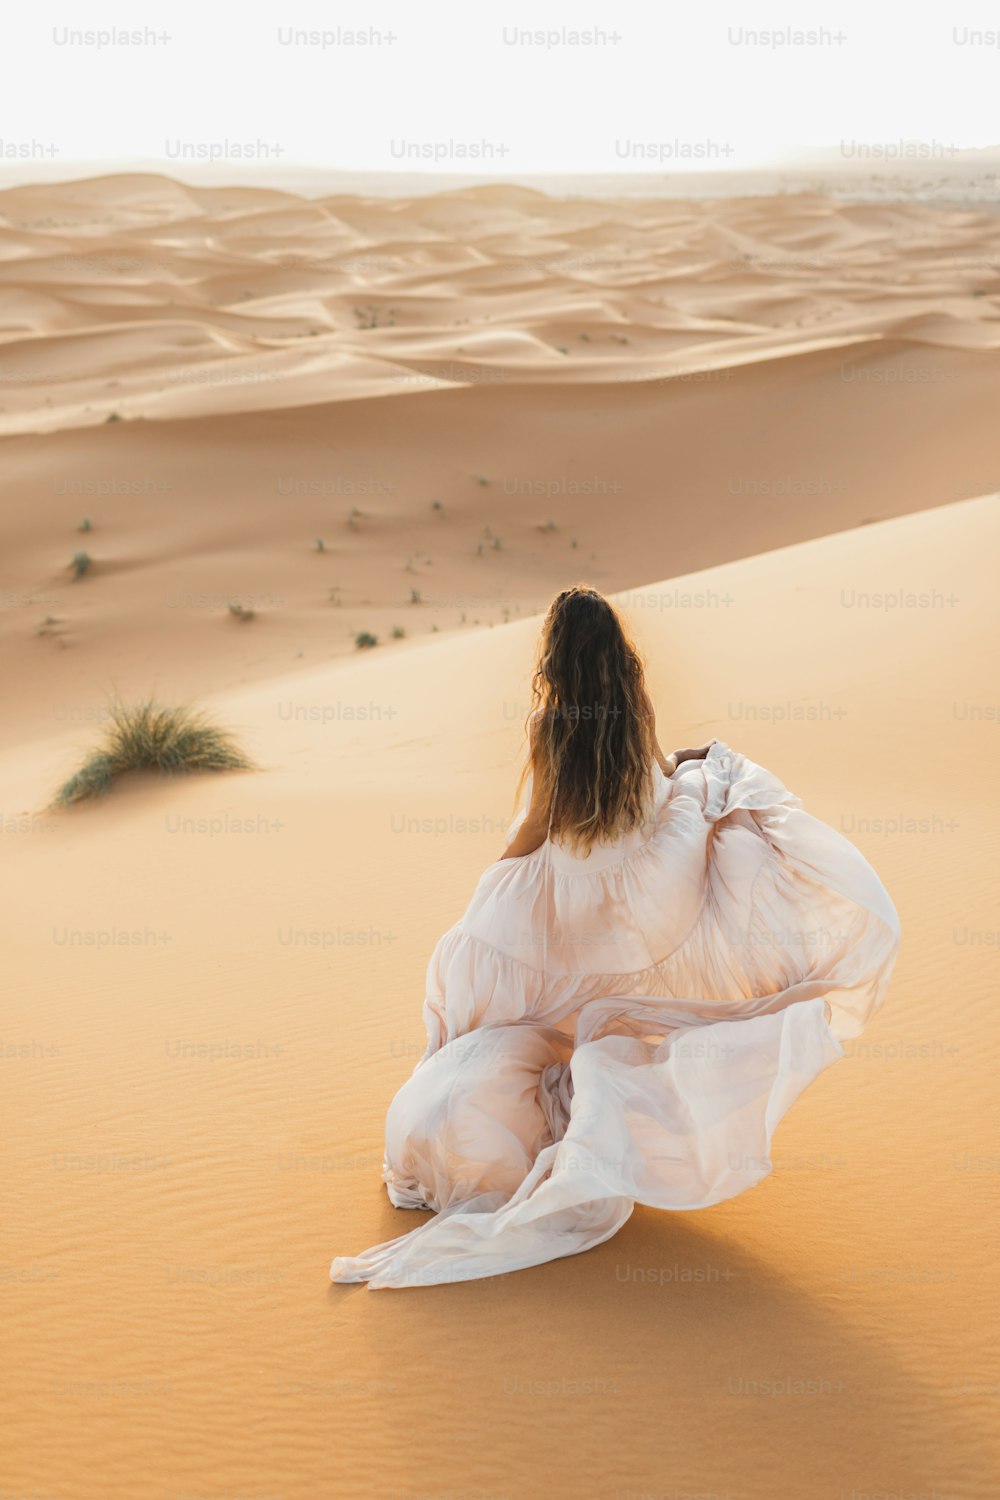 Retrato da mulher da noiva no vestido de noiva incrível no deserto do Saara, Marrocos. Luz quente da noite, belo tom pastel, dunas de areia no horizonte. Vista por trás.